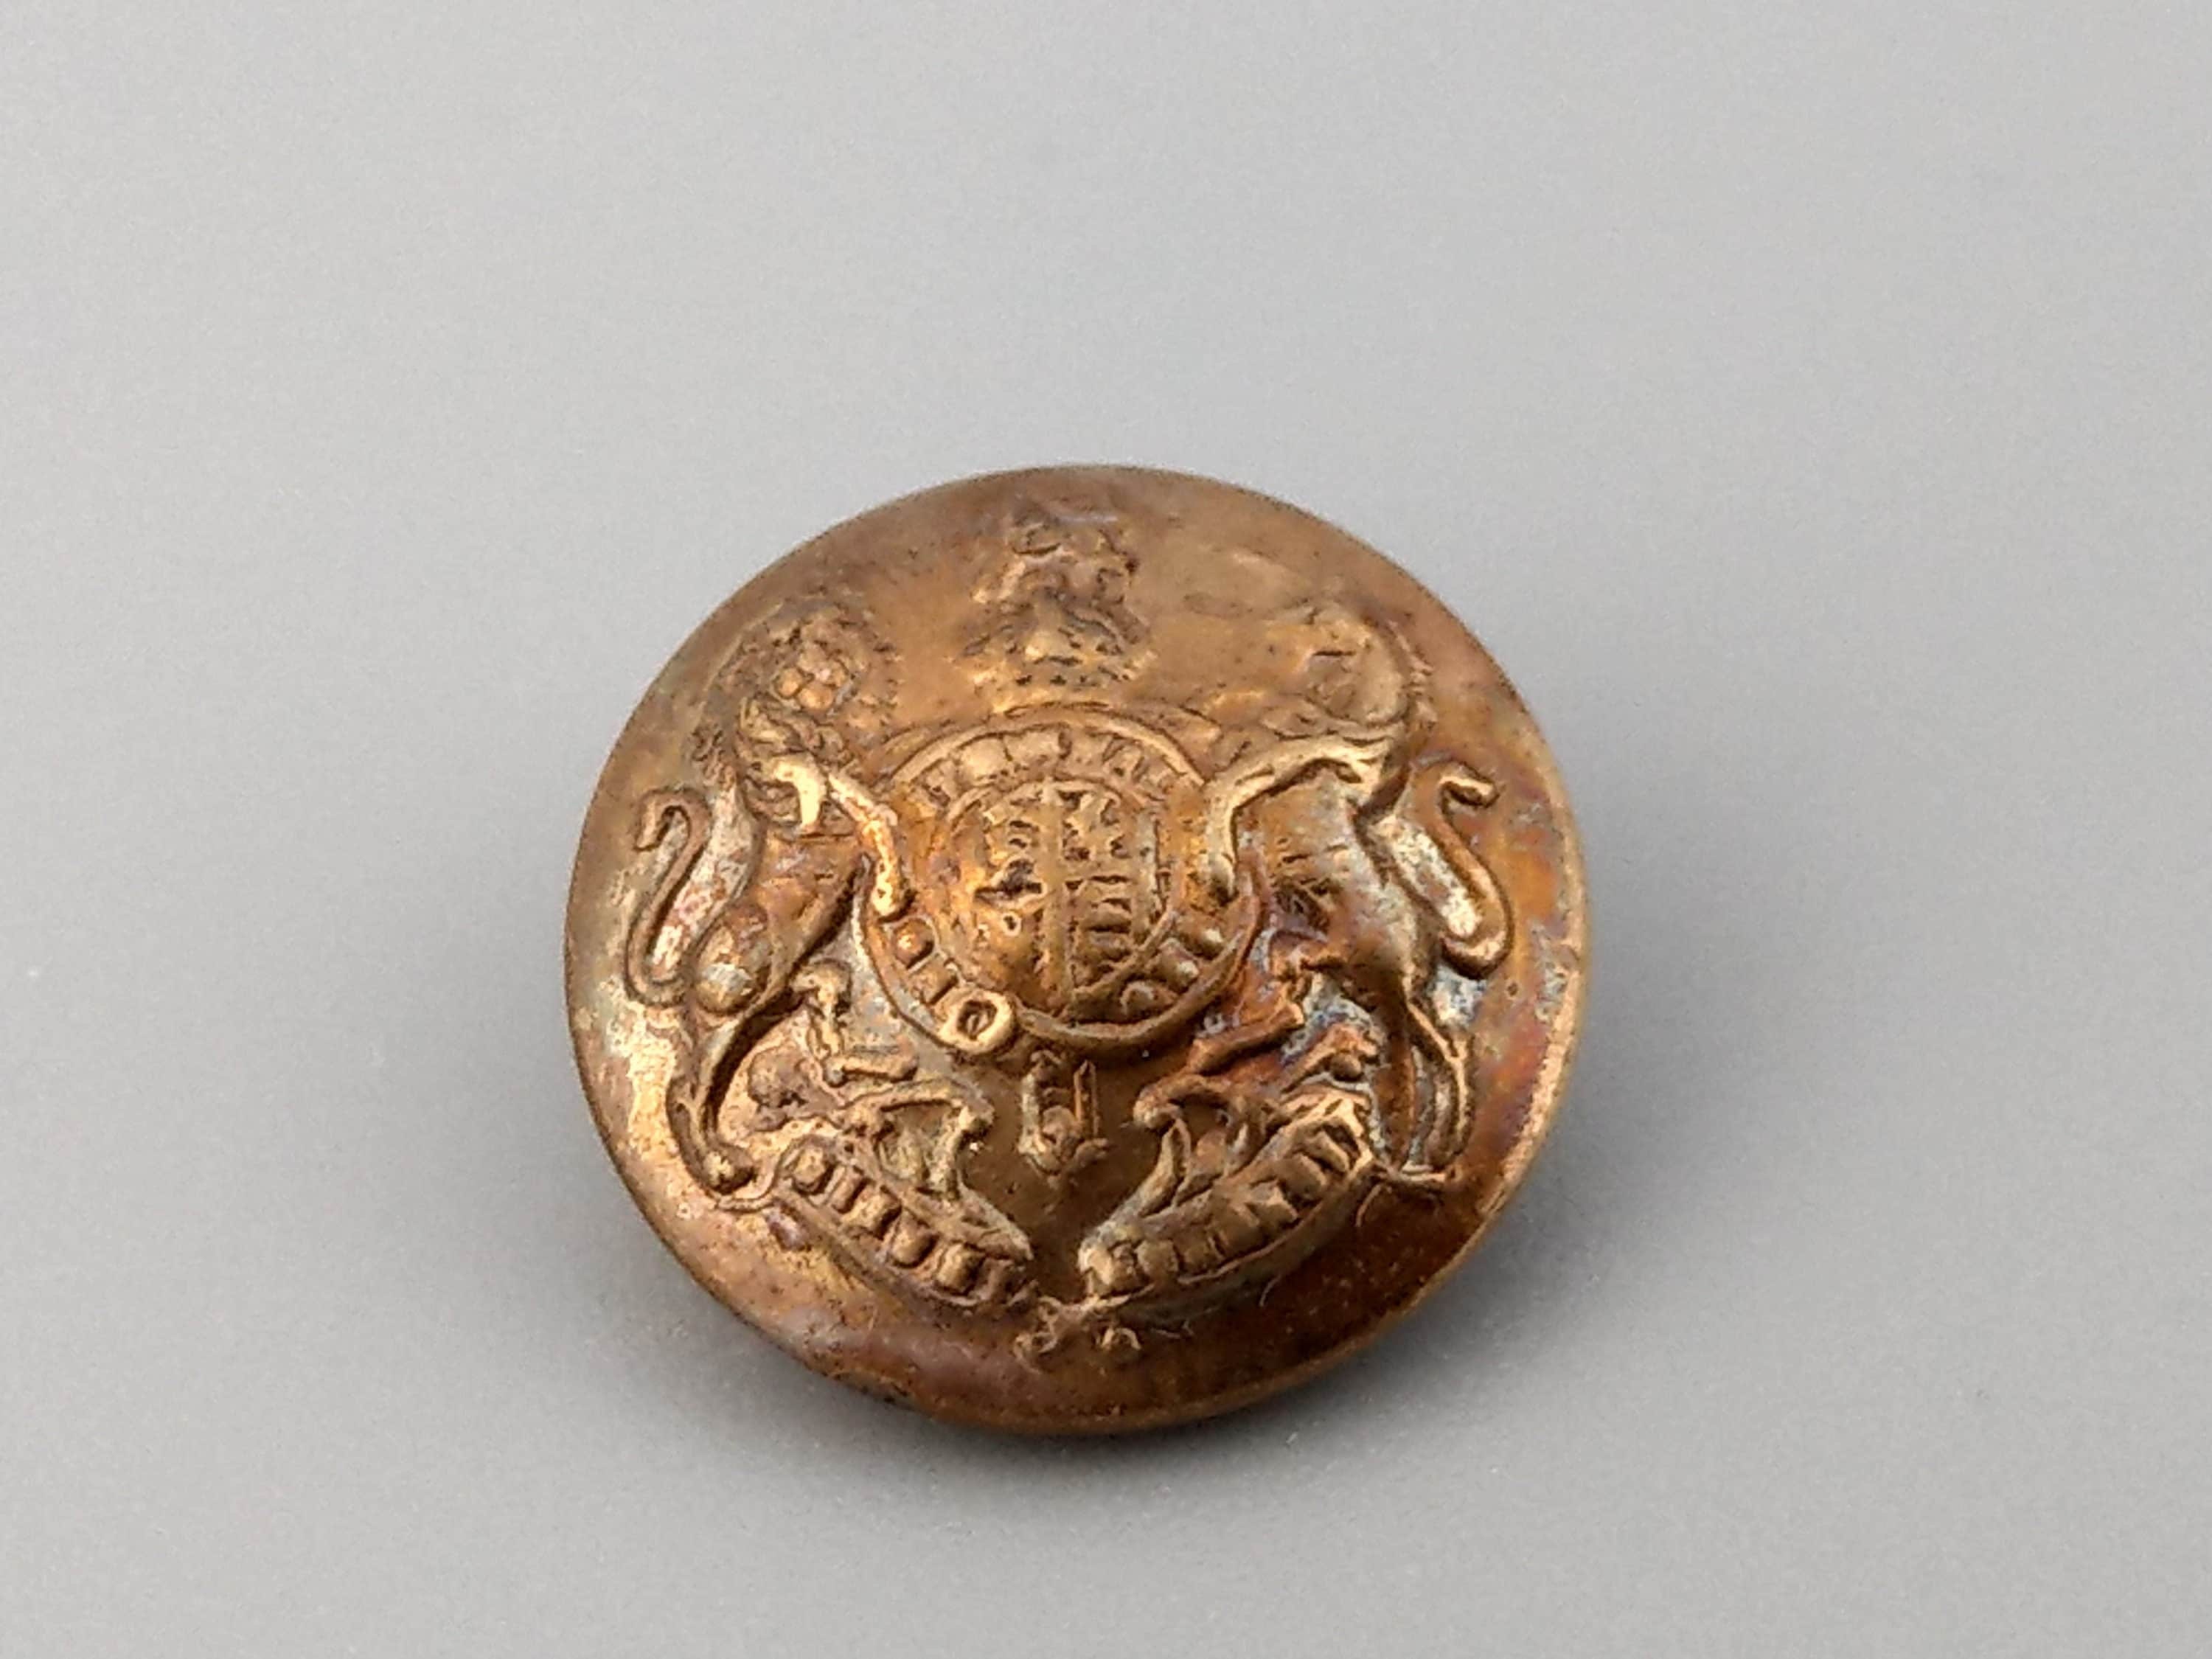 Original Second World War British Army Brass Button Stick